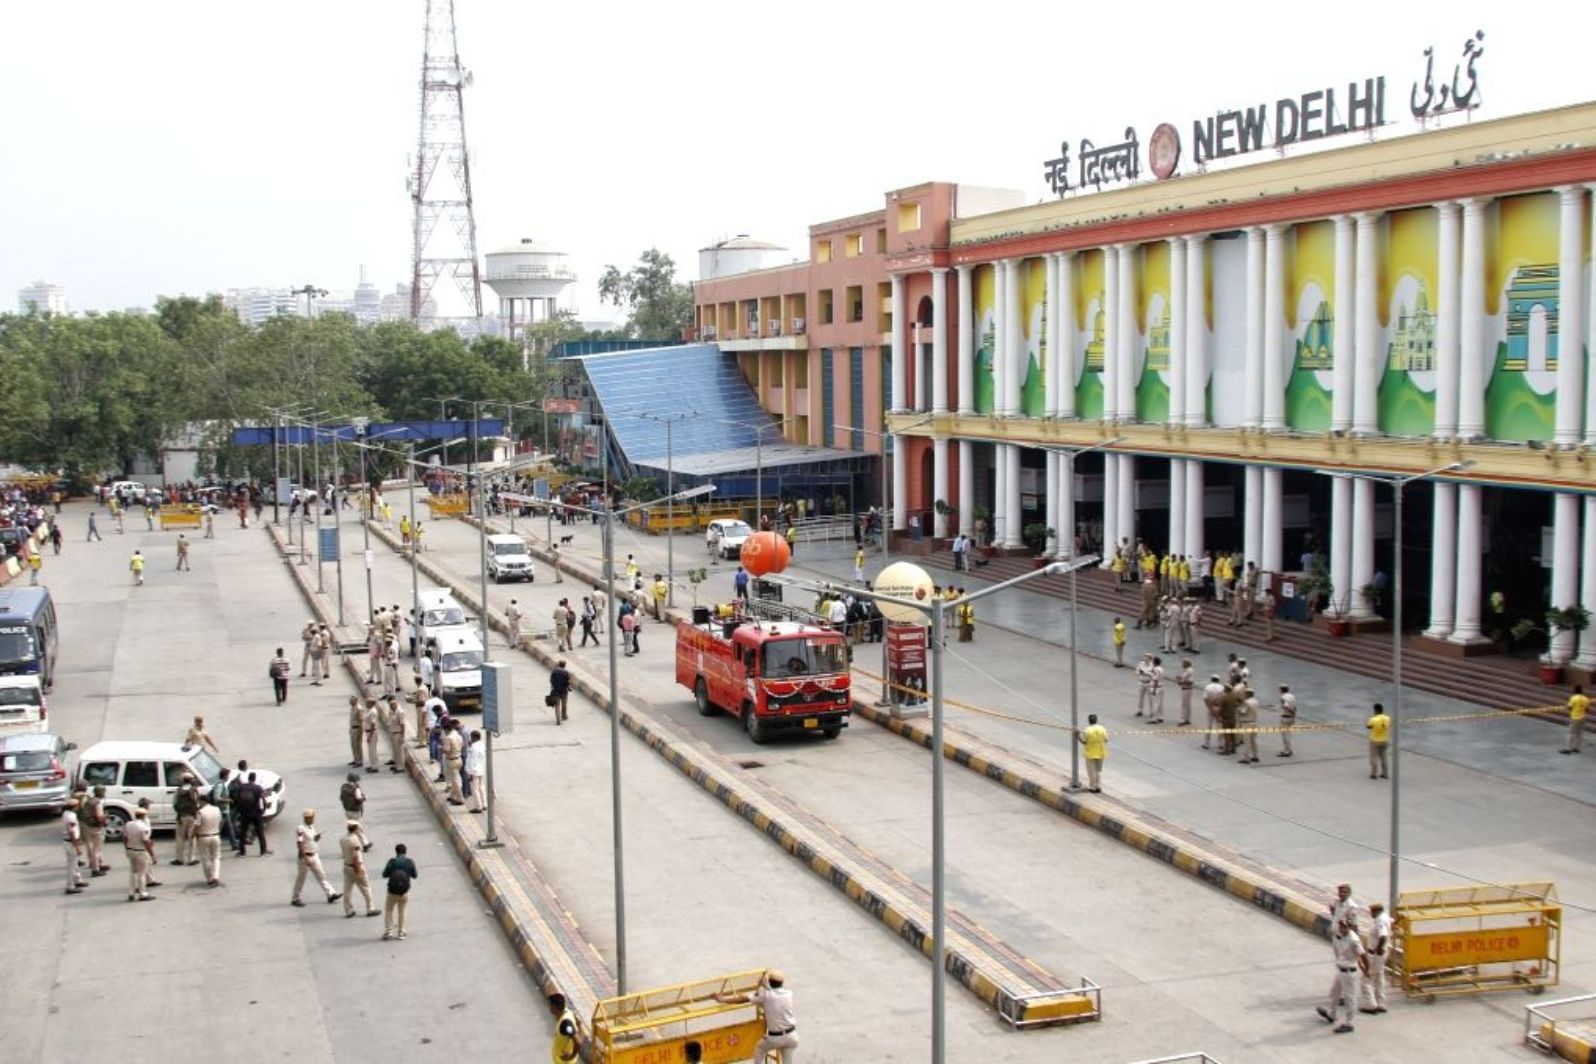 new delhi railway station gate 2 ajmeri gate delhi